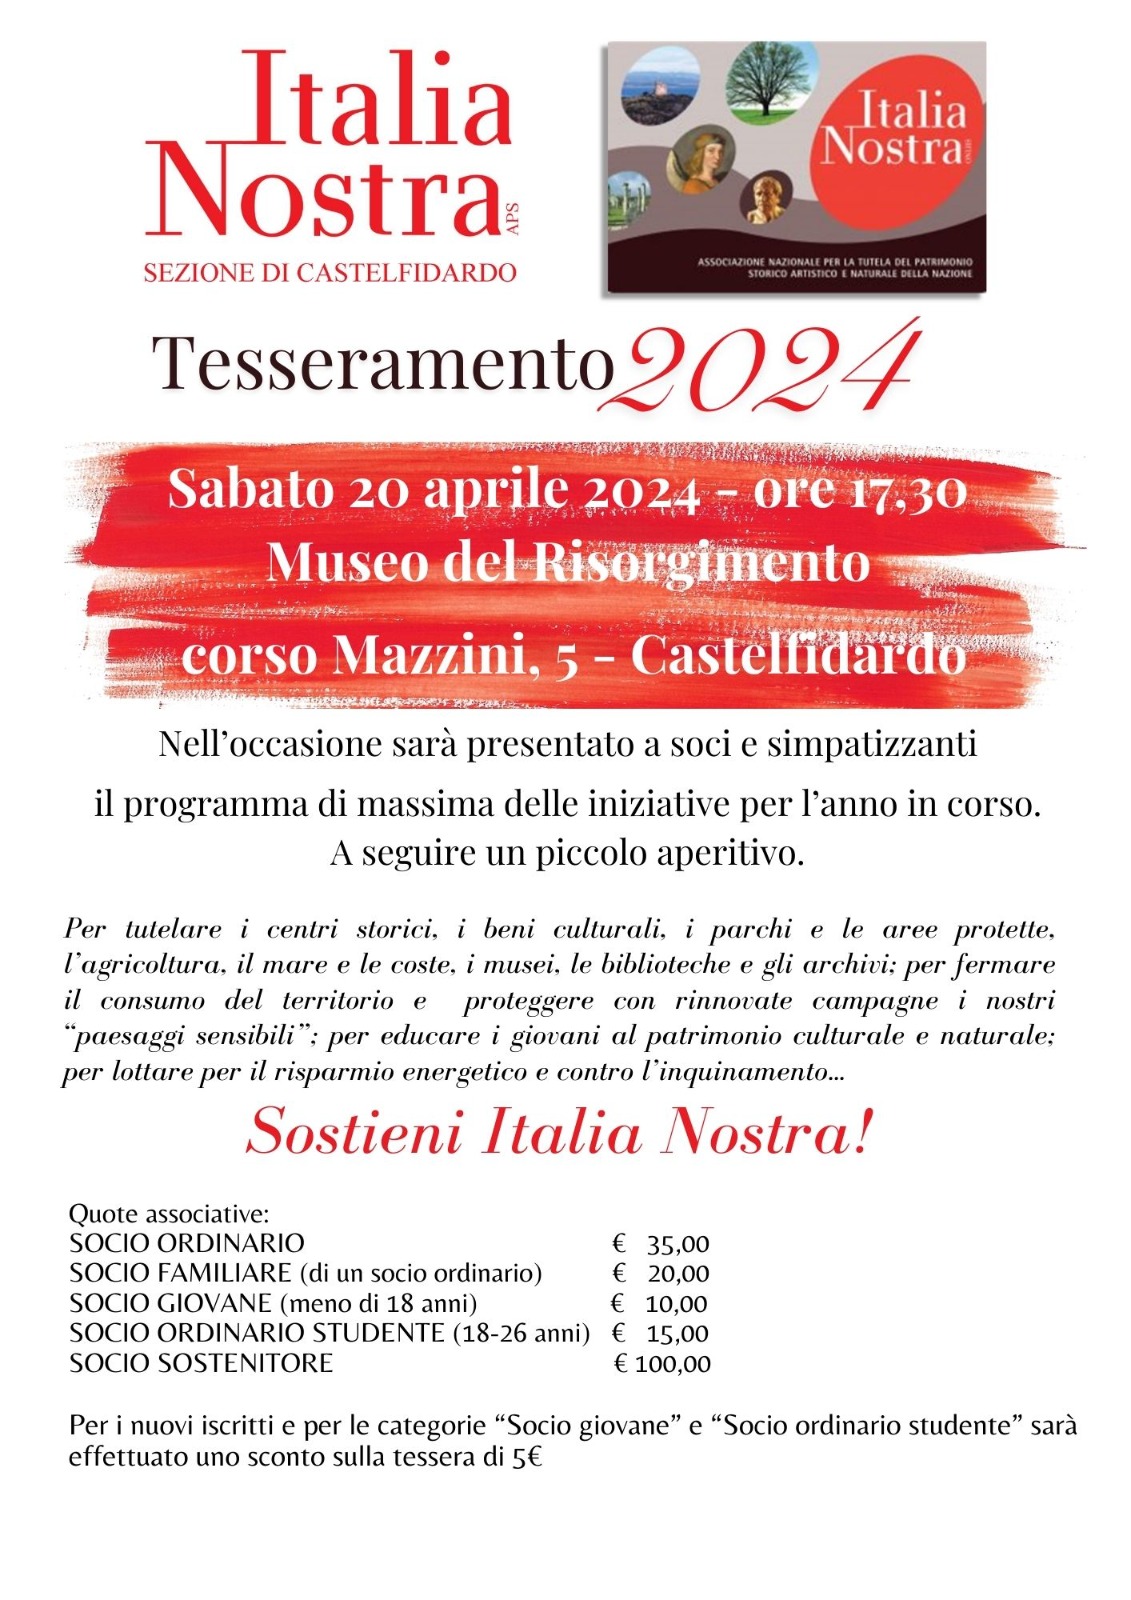 TESSERAMENTO 2024 ITALIA NOSTRA CASTELFIDARDO